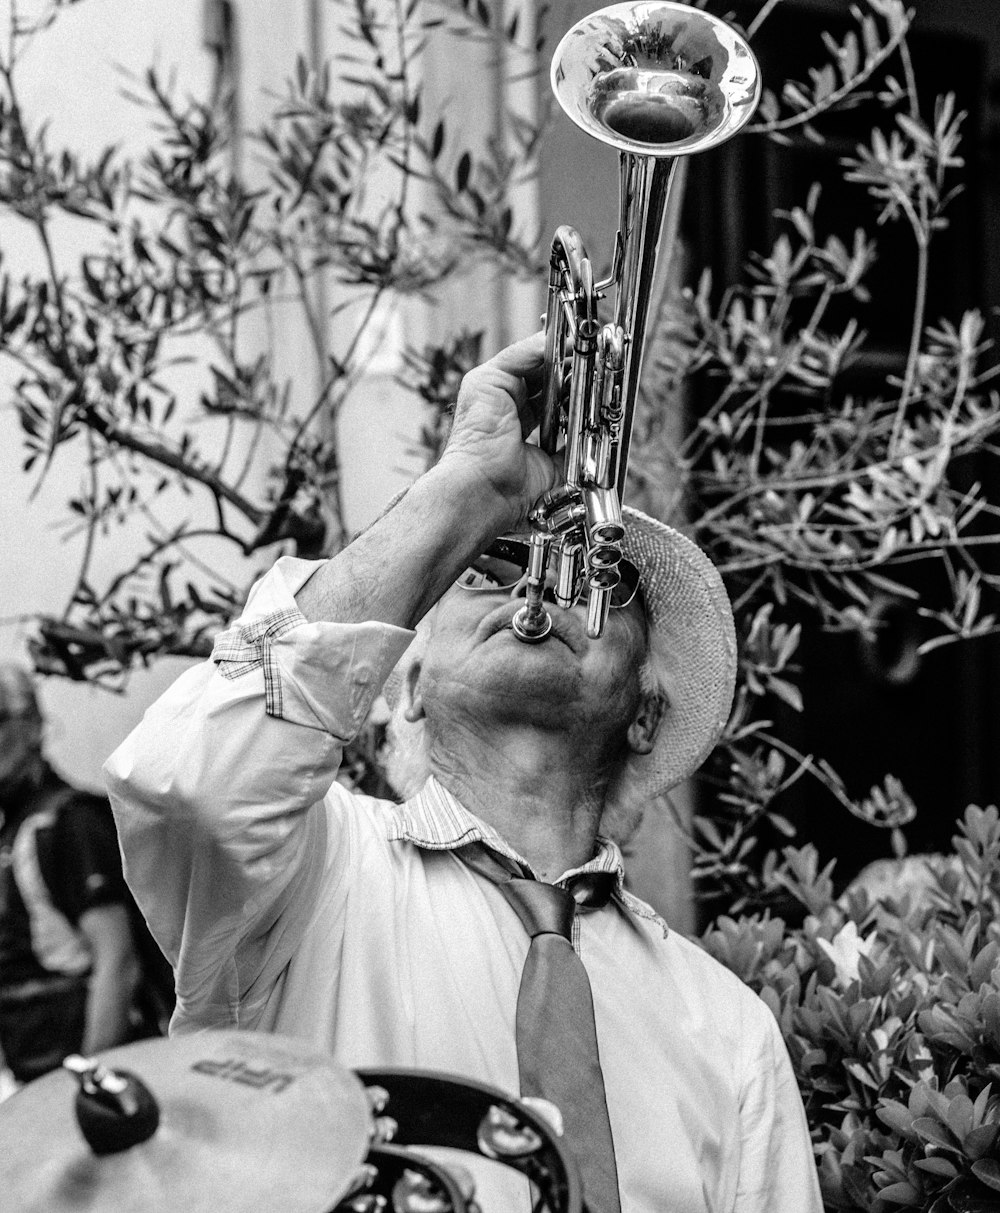 fotografia in scala di grigi di un uomo che suona la tromba